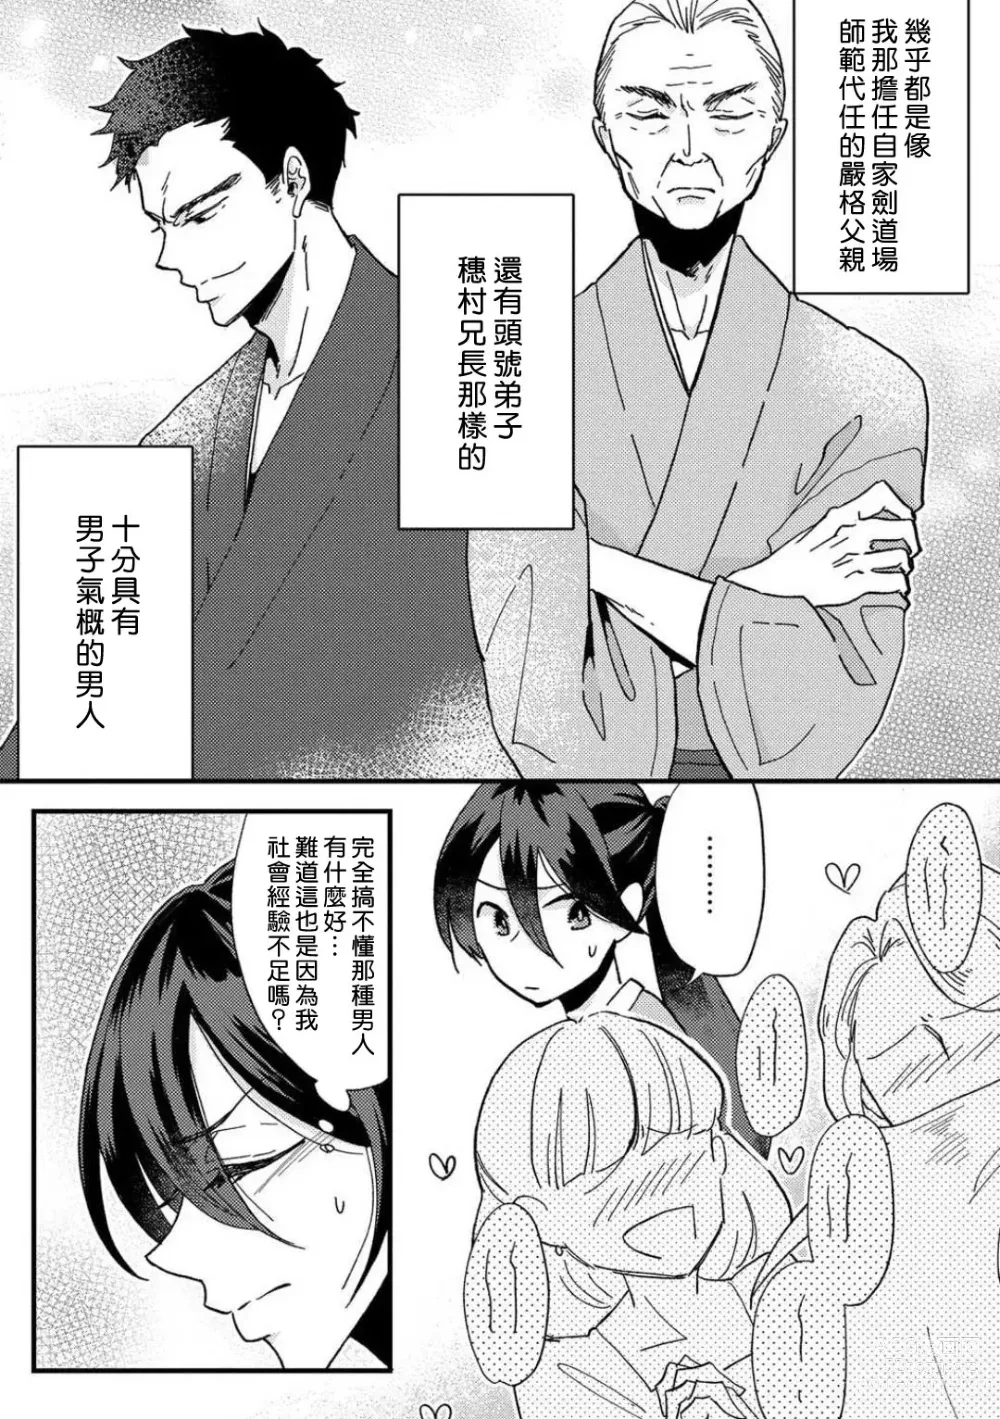 Page 9 of manga 败在他的眼泪攻势下 奈奈大小姐想被哭唧唧的男子推倒！ 1-6